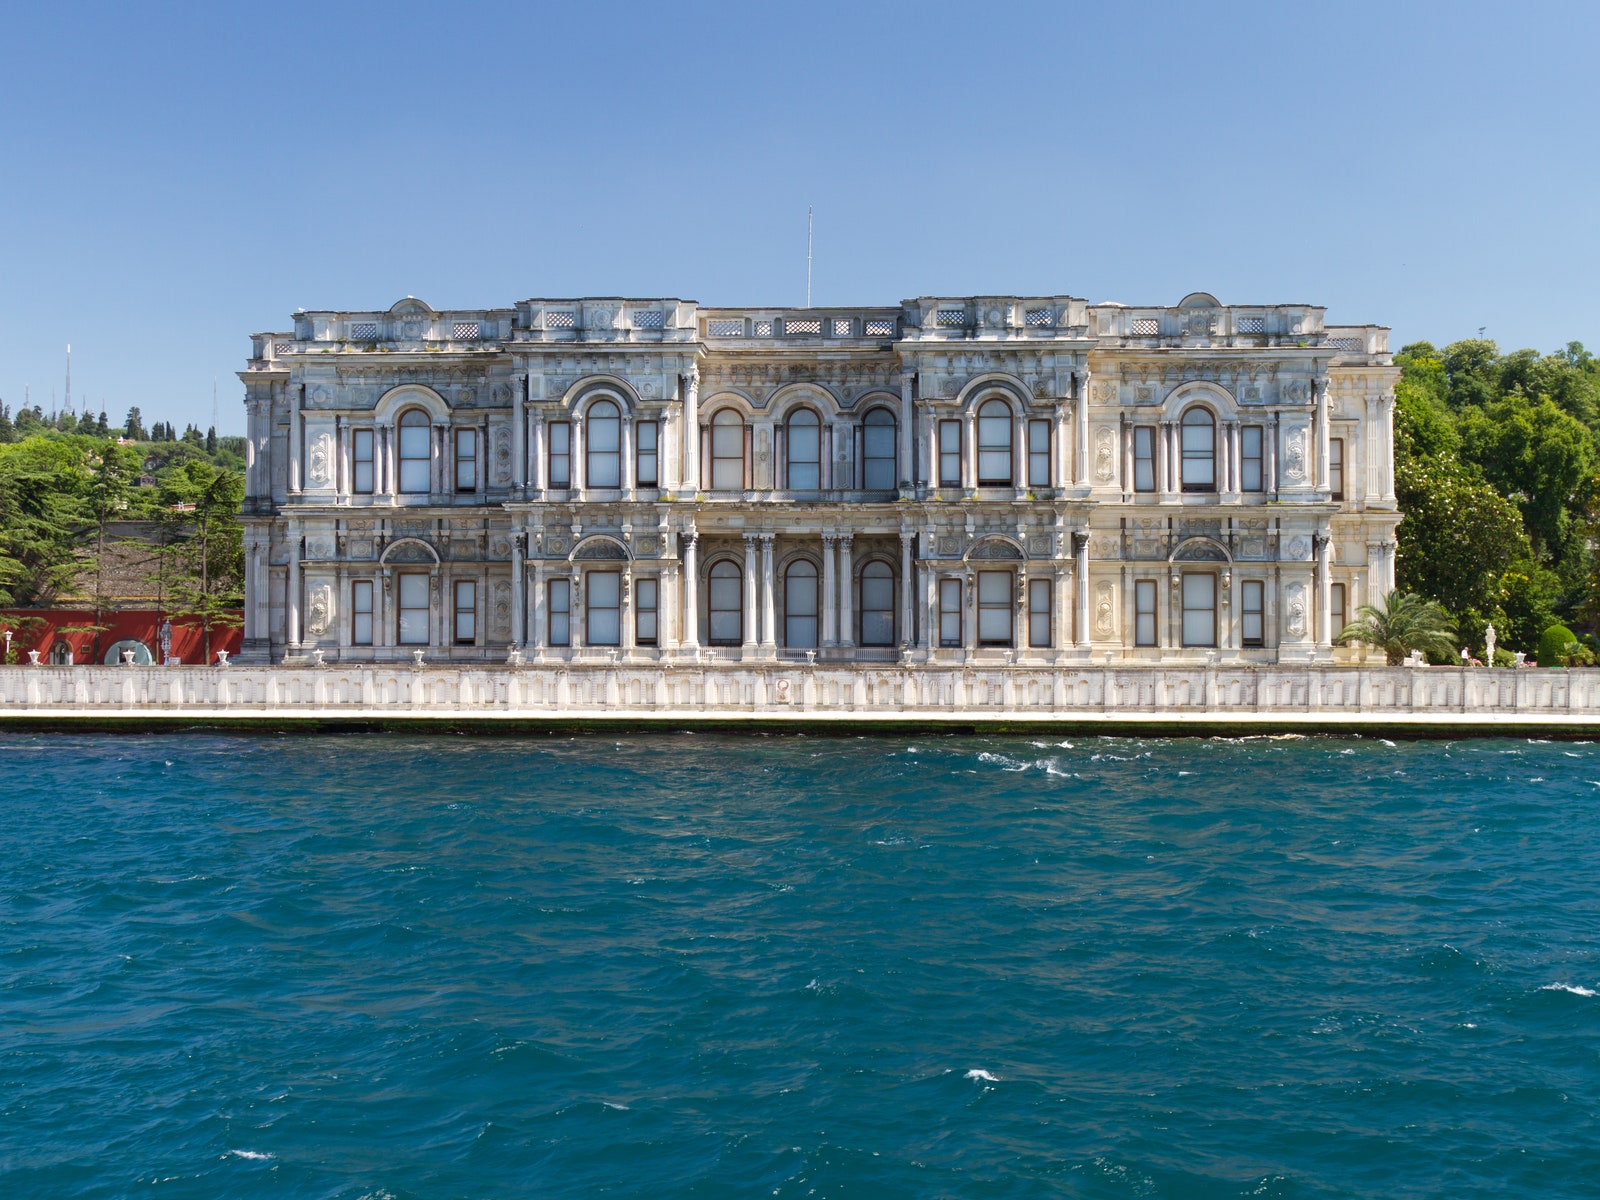 Гид по Стамбулу от Анастасии Ромашкевич: отели, рестораны, стритфуд и неочевидные архитектурные достопримечательности